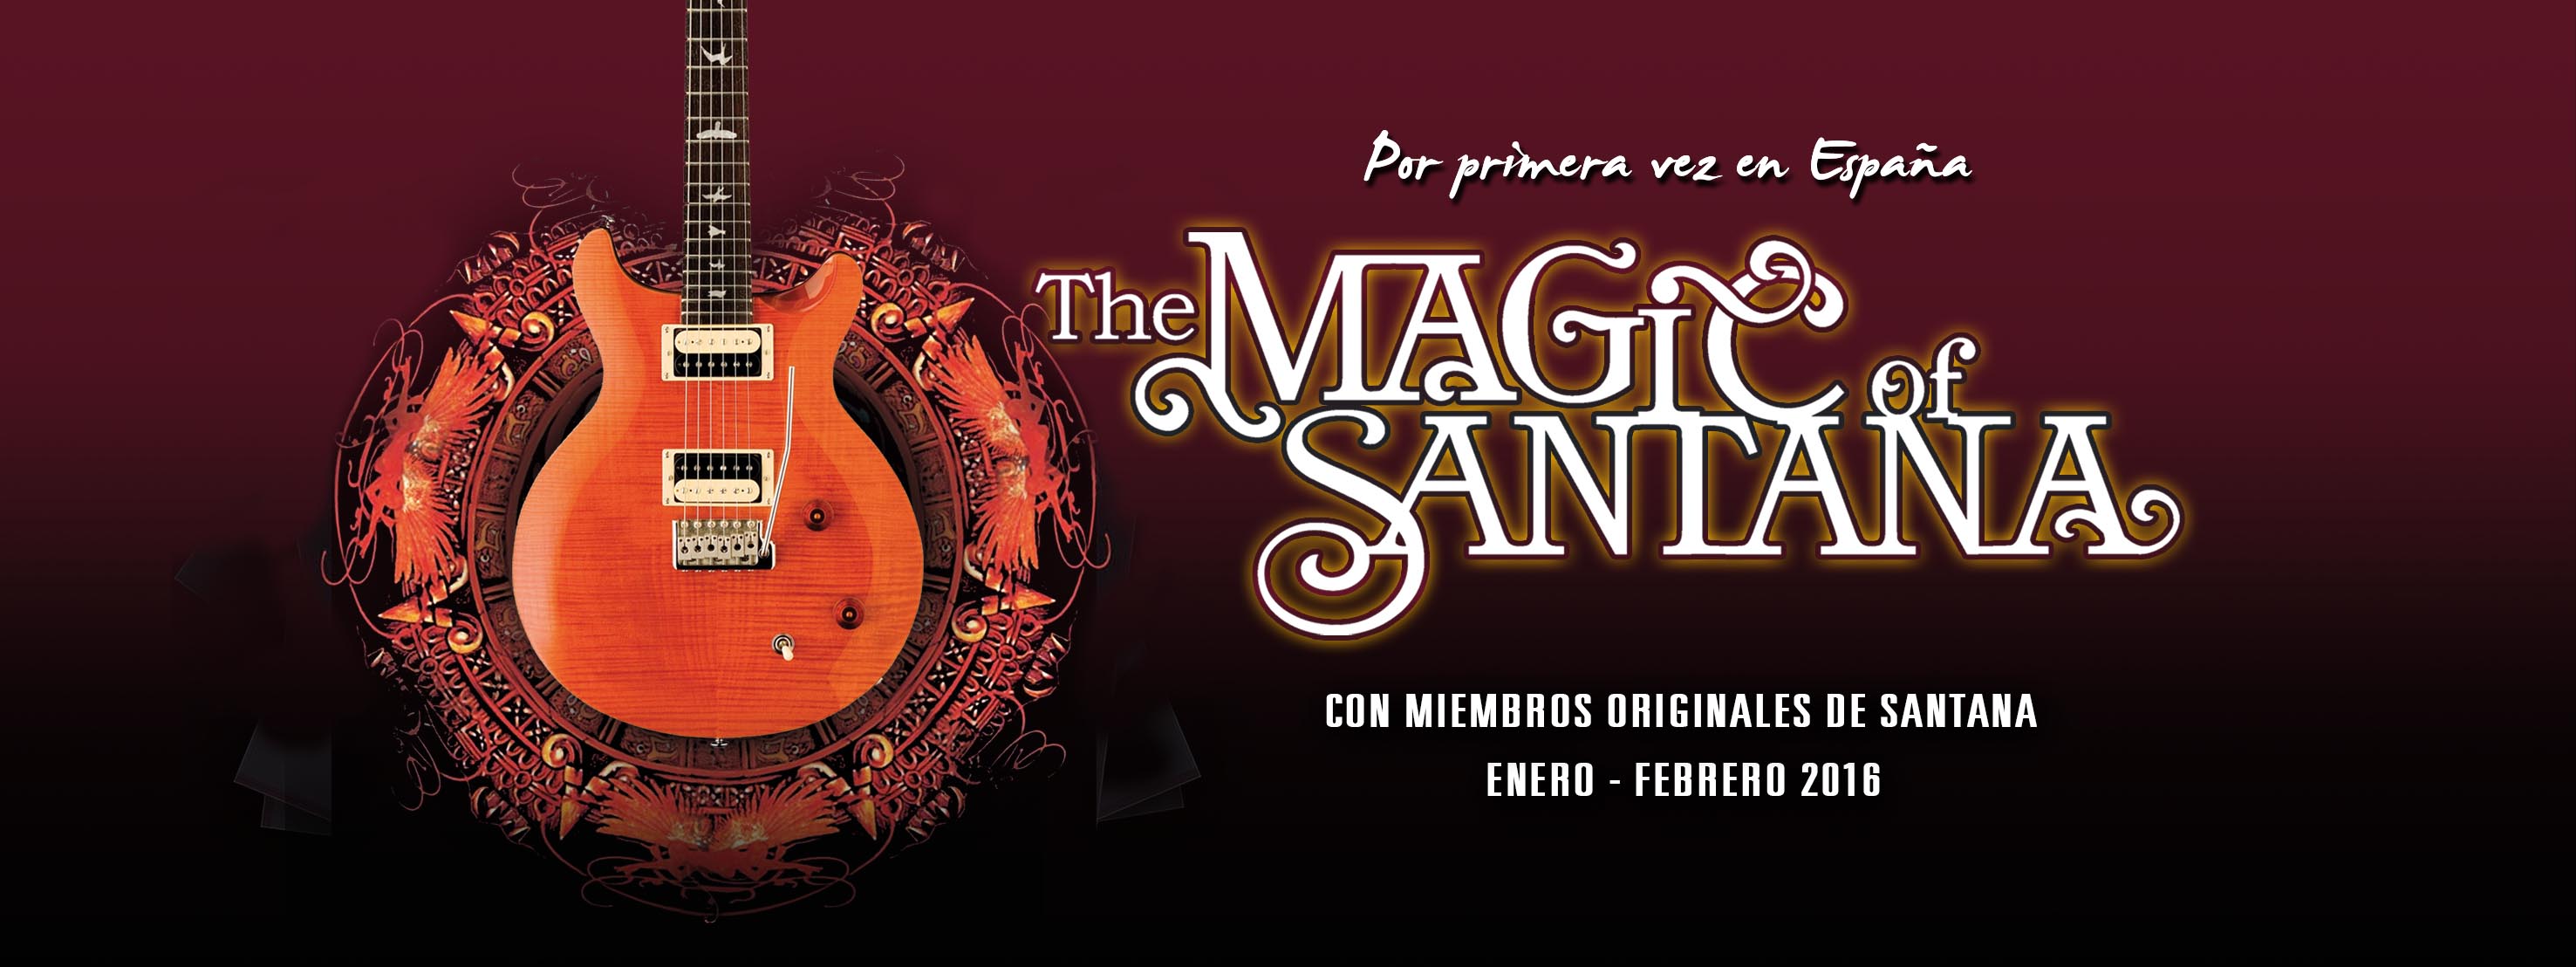 The Magic of Santana en el Teatro Romea